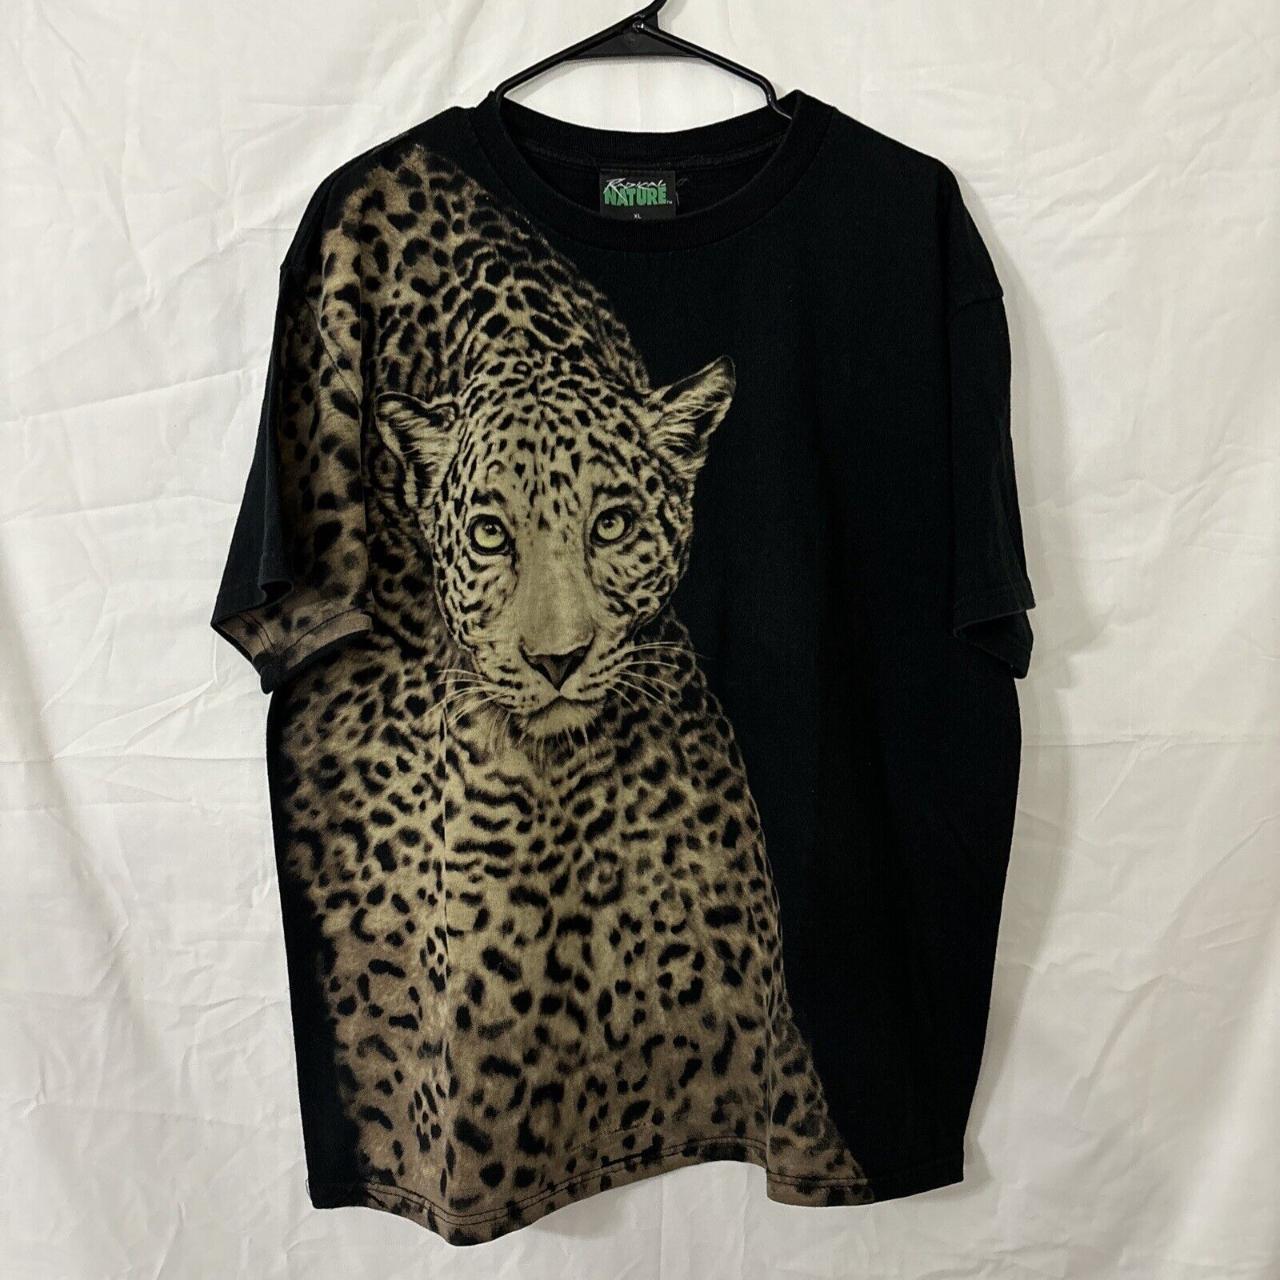 Vintage Radical Nature Leopard Animal T-Shirt All... - Depop